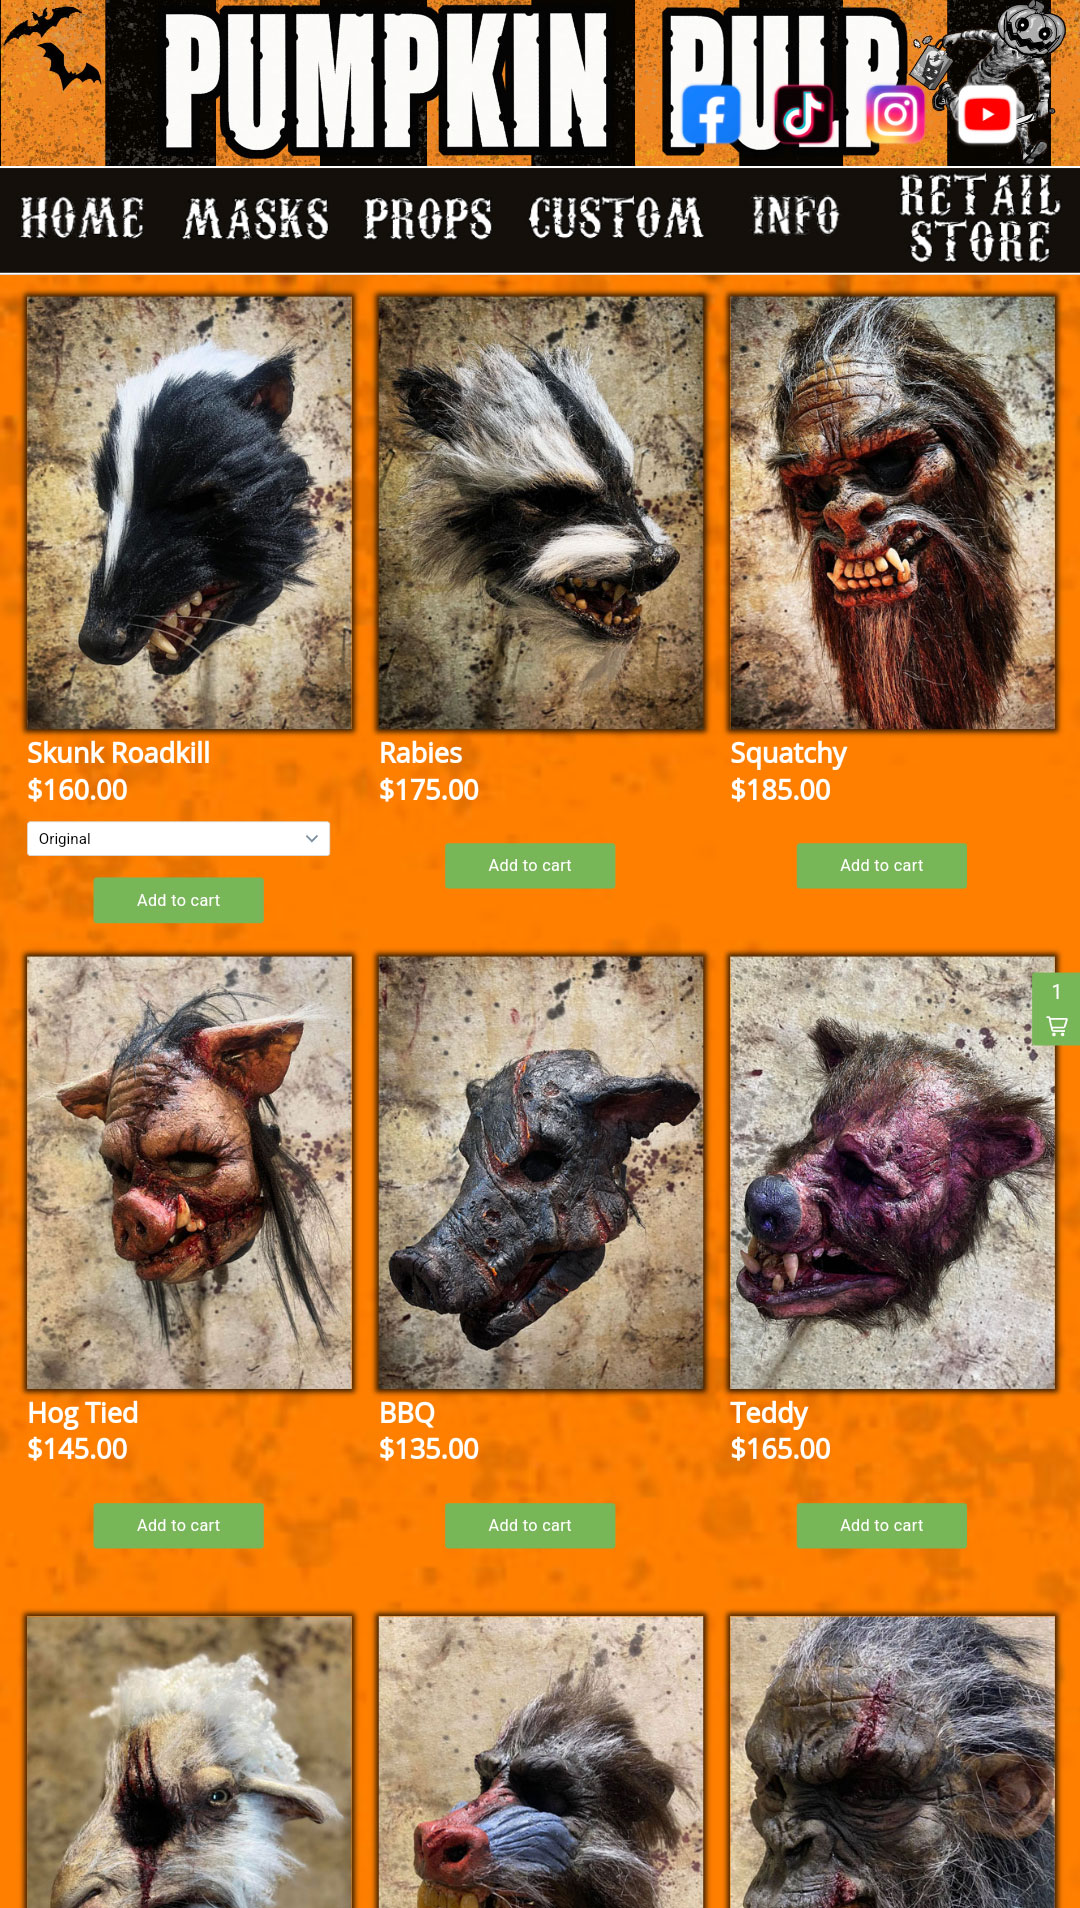 pumpkin pulp e-commerce store web design horror masks and props muncie indiana